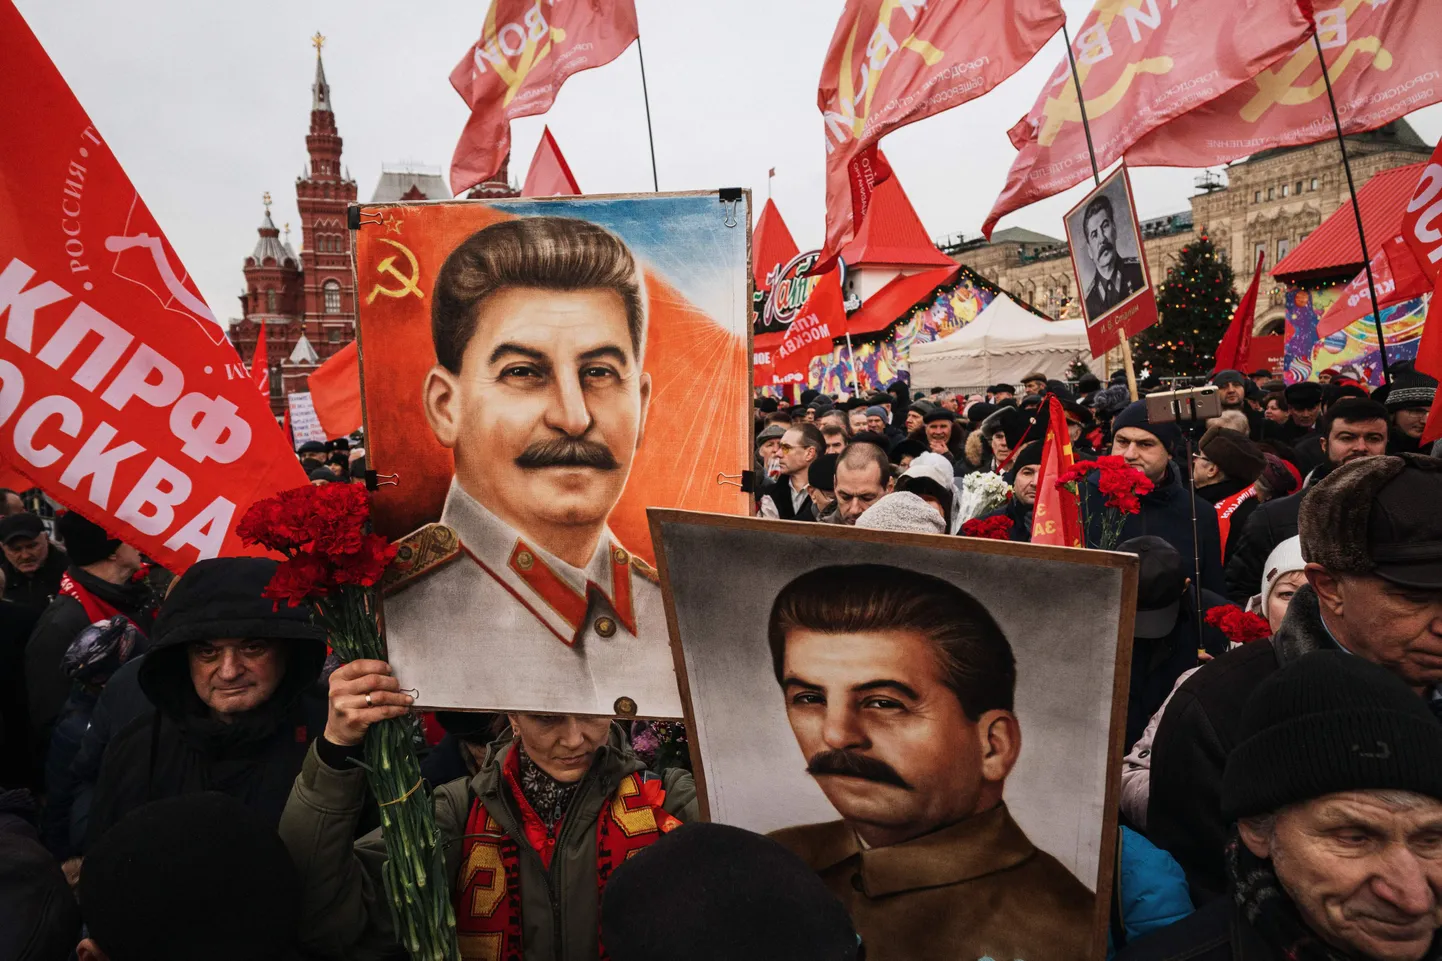 Люди держат портреты советского лидера Иосифа Сталина и ждут, чтобы возложить цветы к его могиле у Кремля на Красной площади в Москве 21 декабря 2019 года, когда члены различных коммунистических и левых движений собрались, чтобы отметить 140-ю годовщину со дня его рождения.